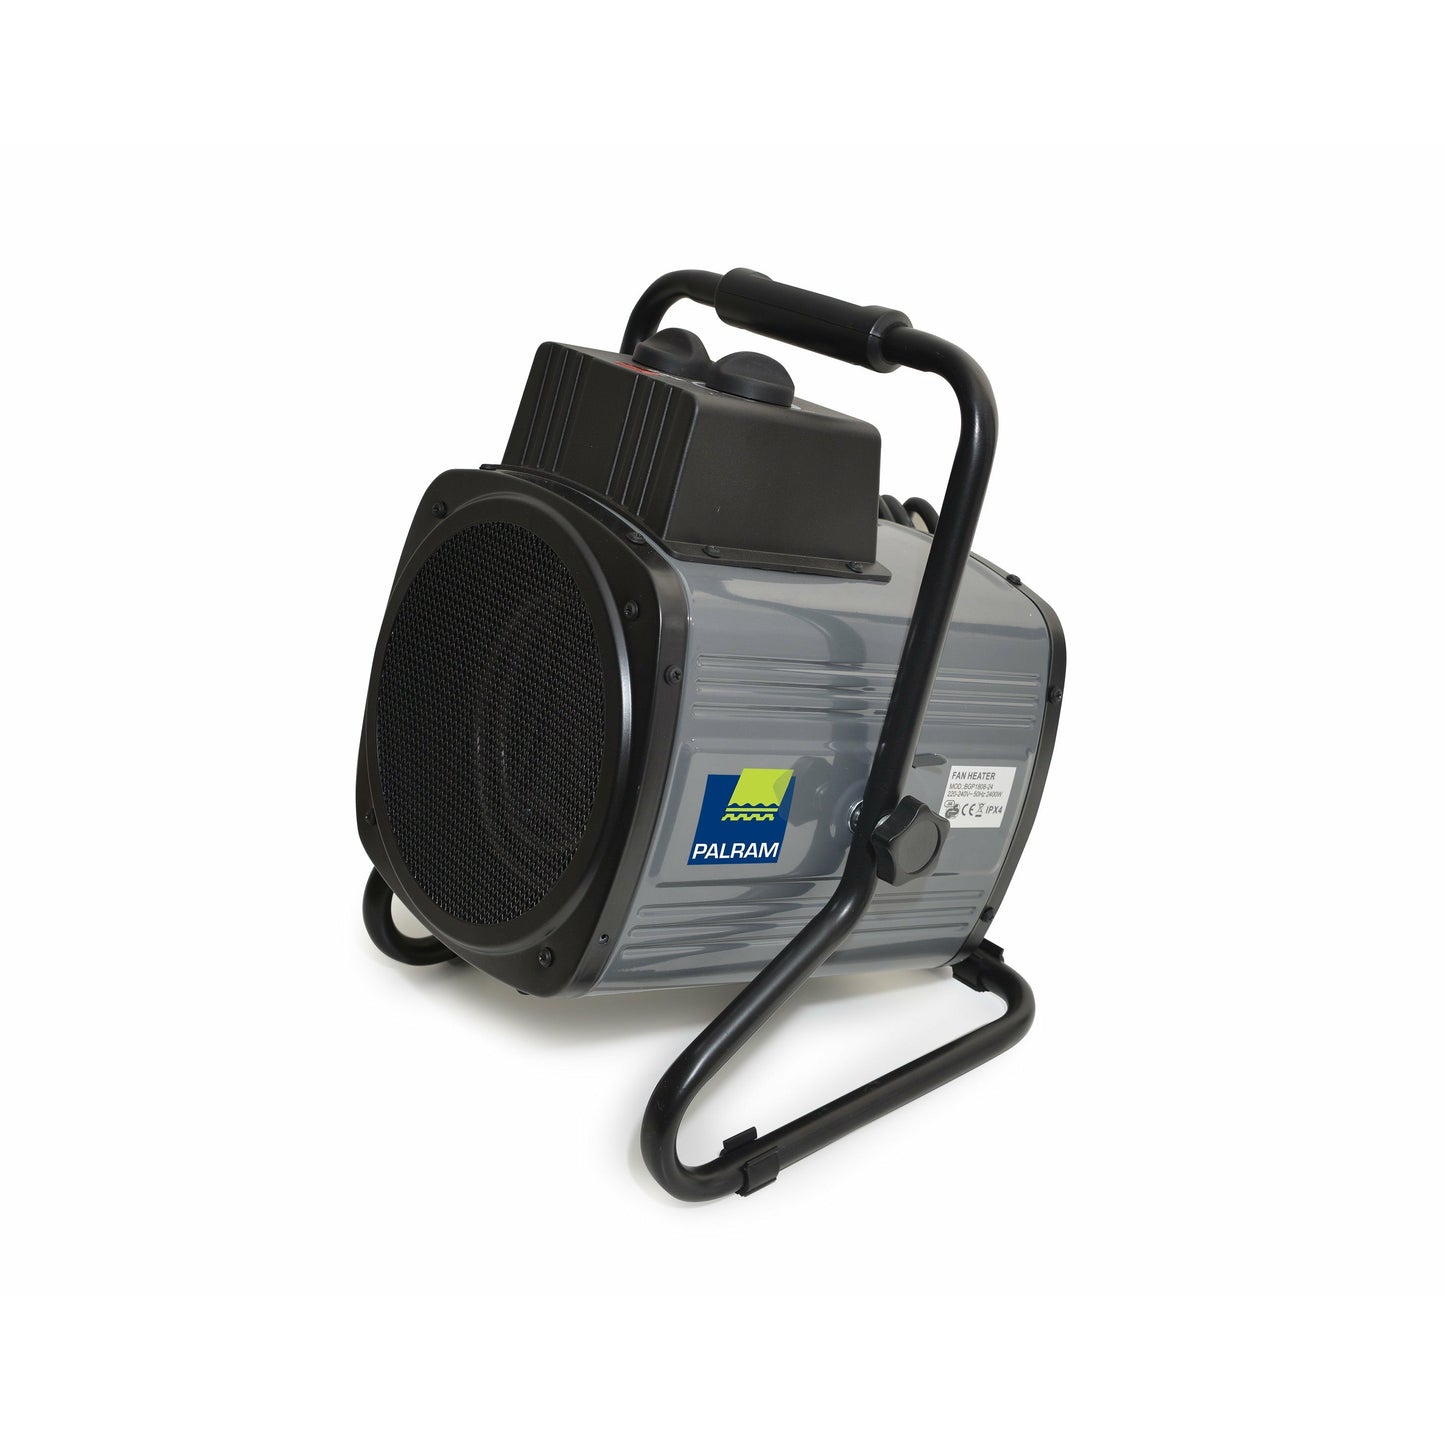 Palram - Canopia 1500W Portable Fan Heater